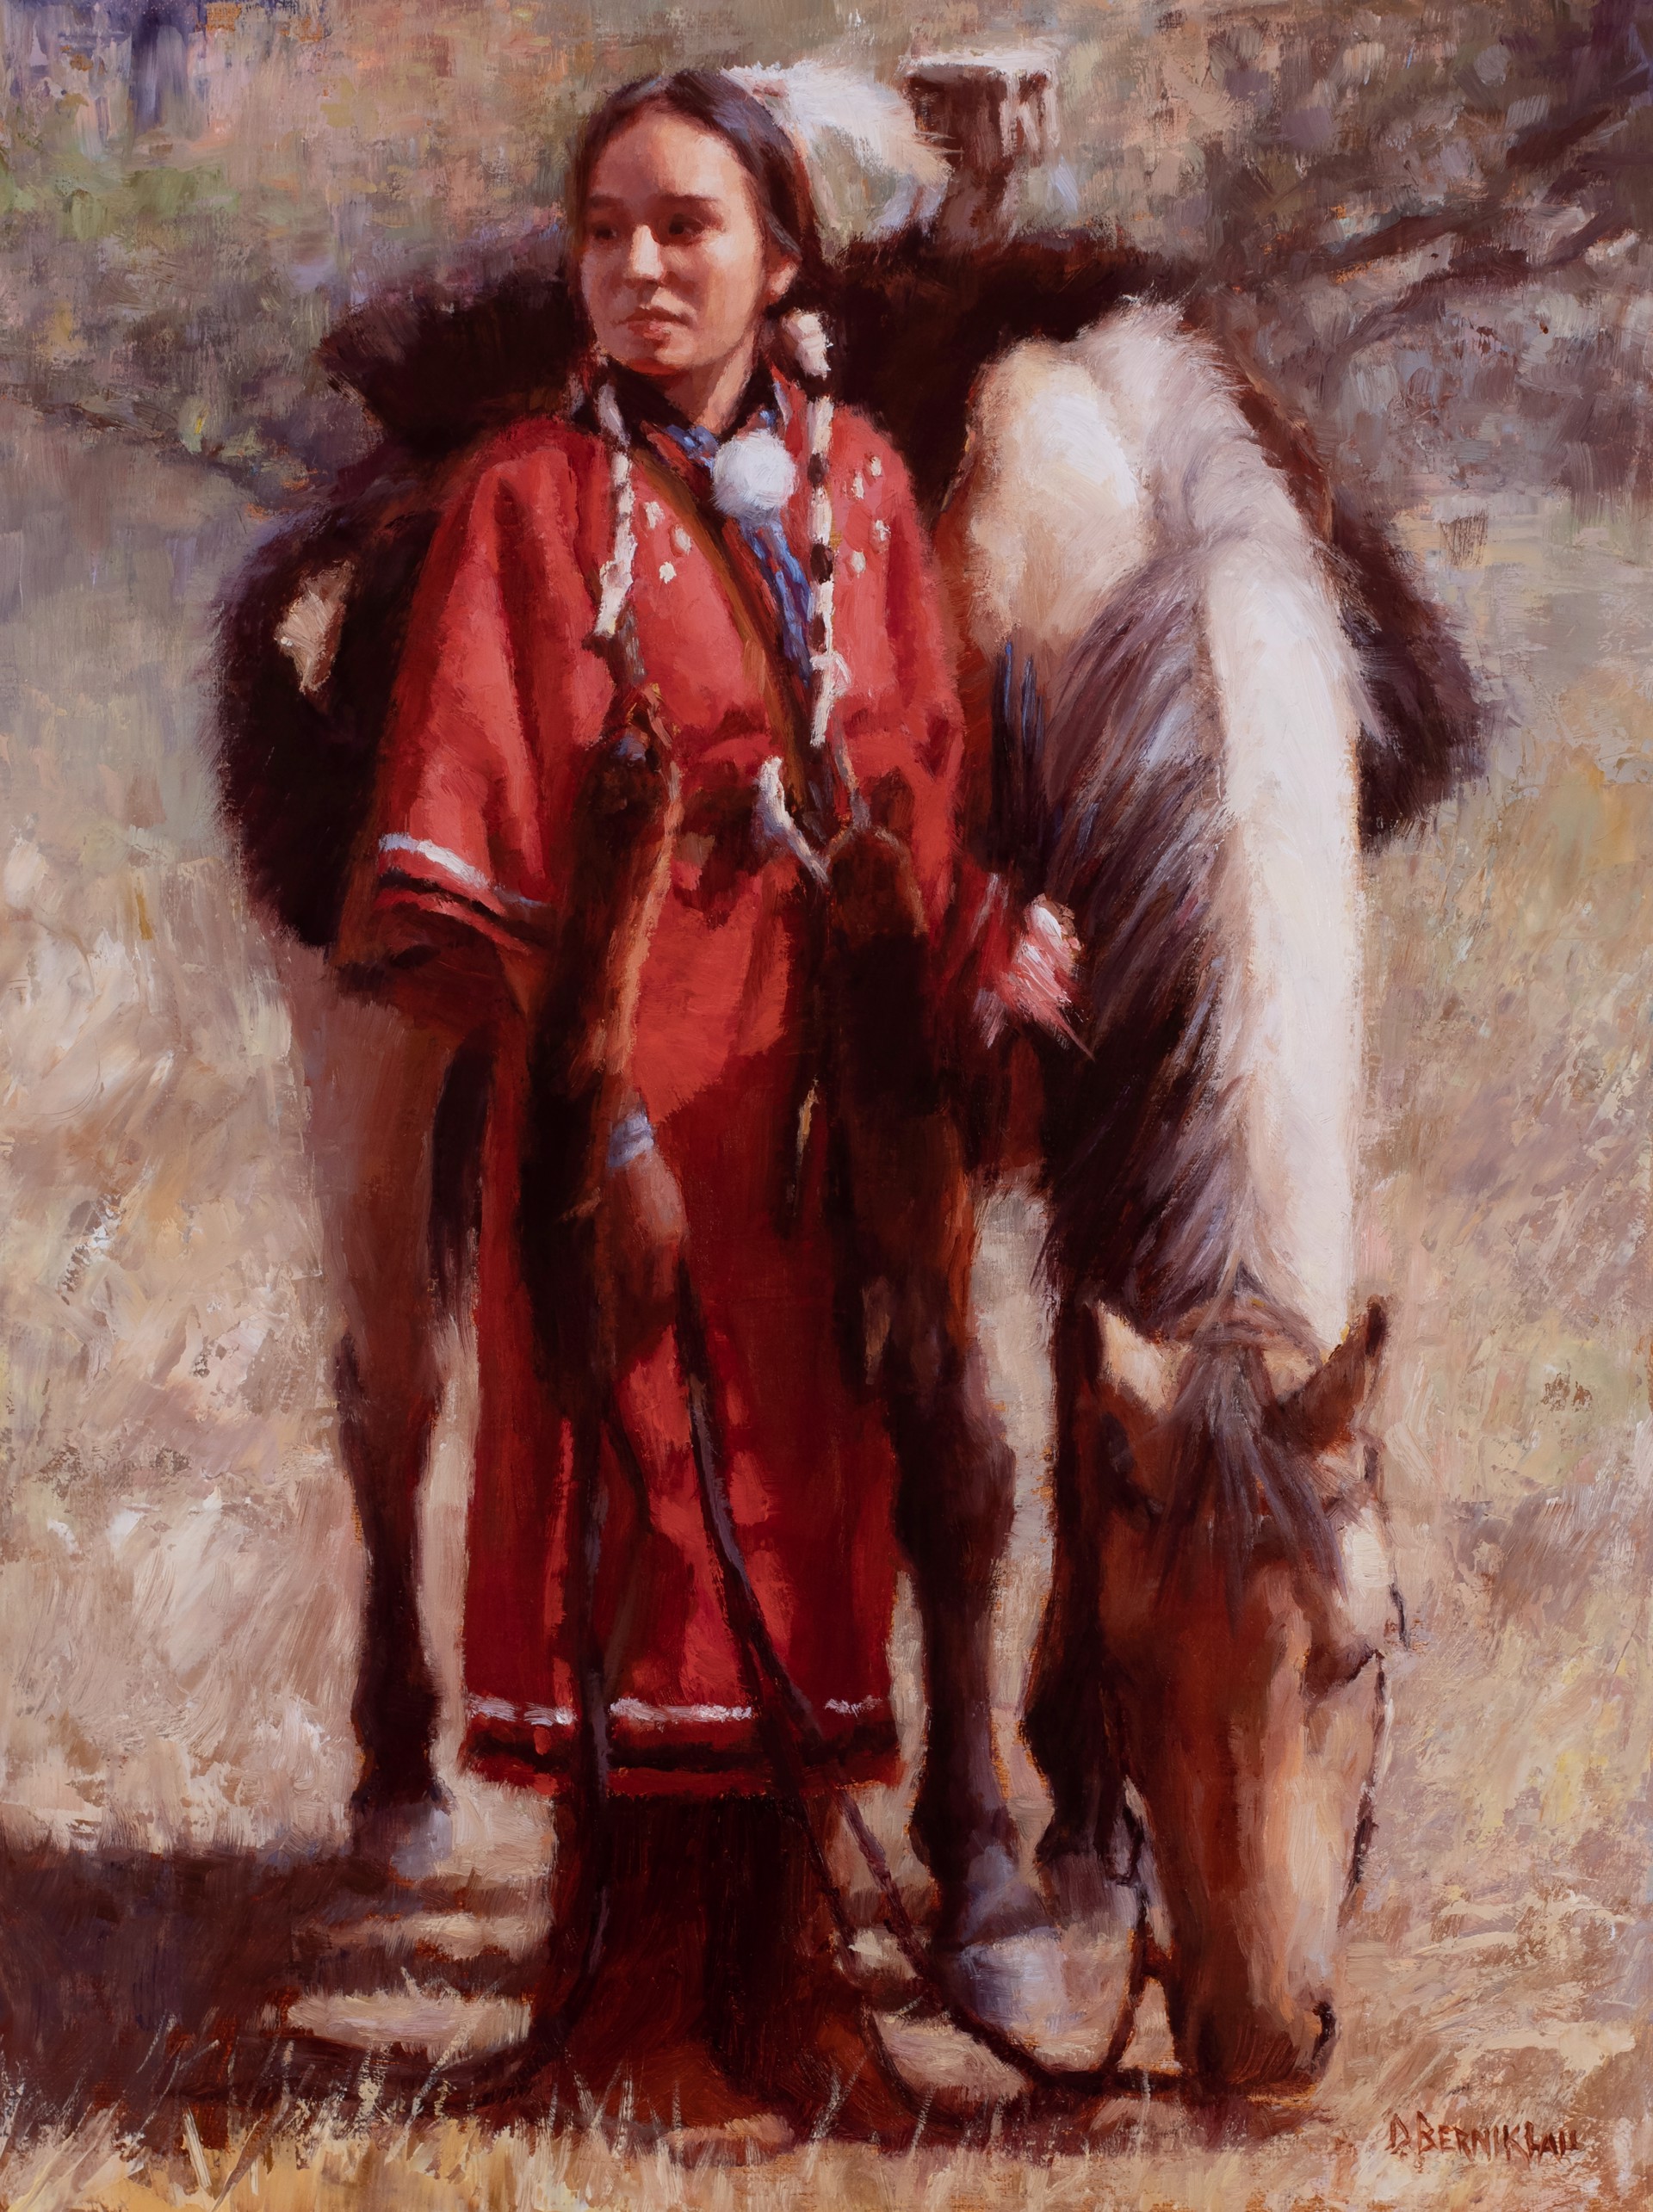 Proud Native Daughter by Deborah Berniklau